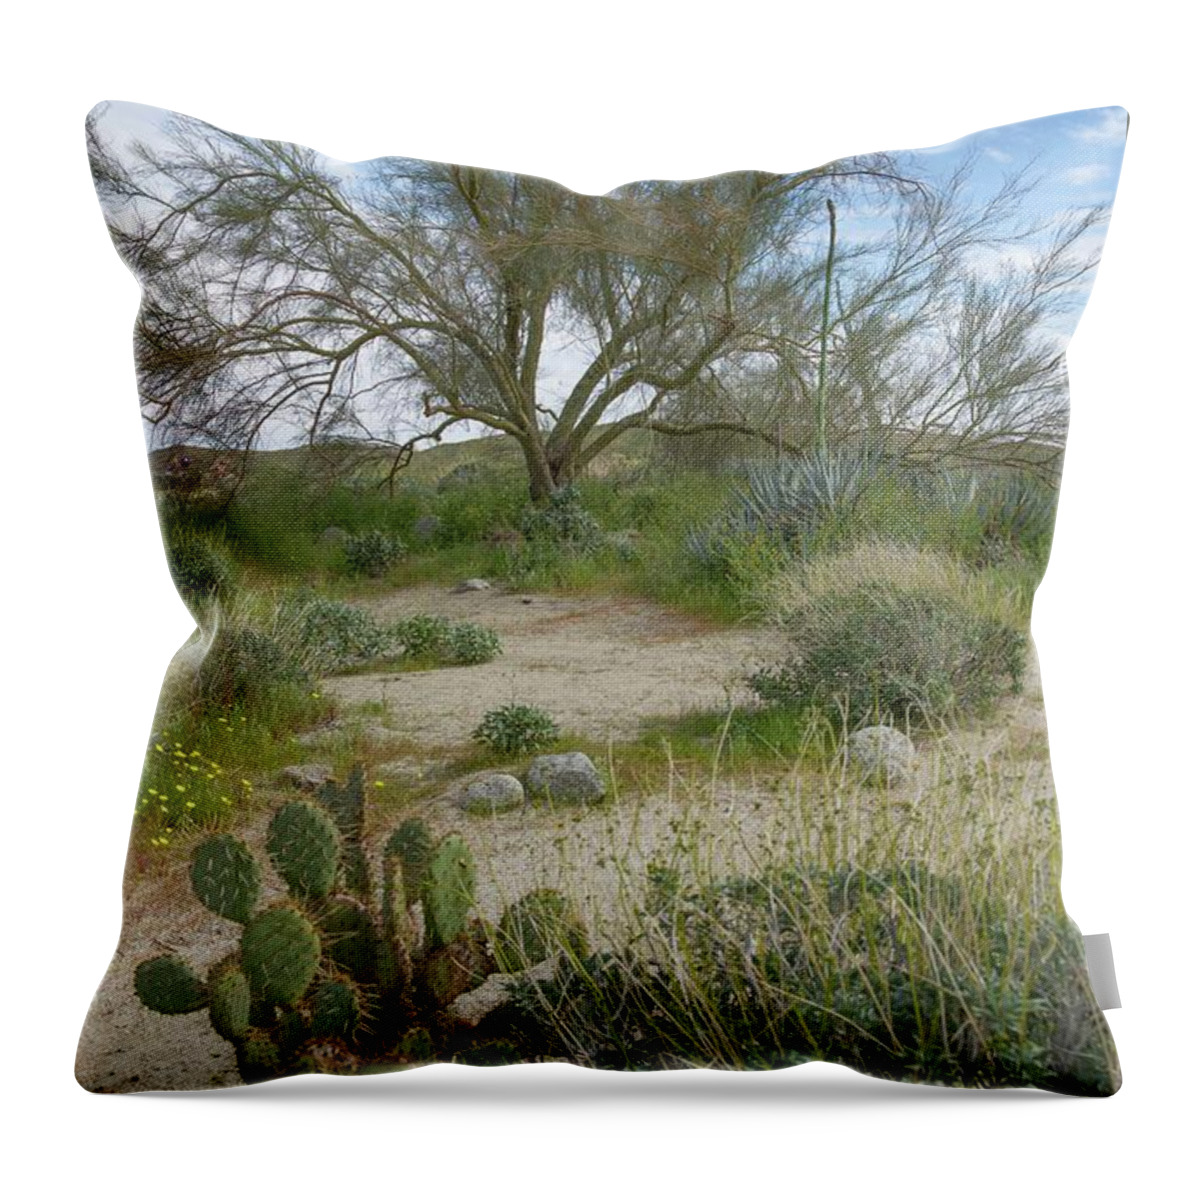 Anza-borrego Throw Pillow featuring the photograph Anza Borrego Desert Landscape by Rebecca Herranen